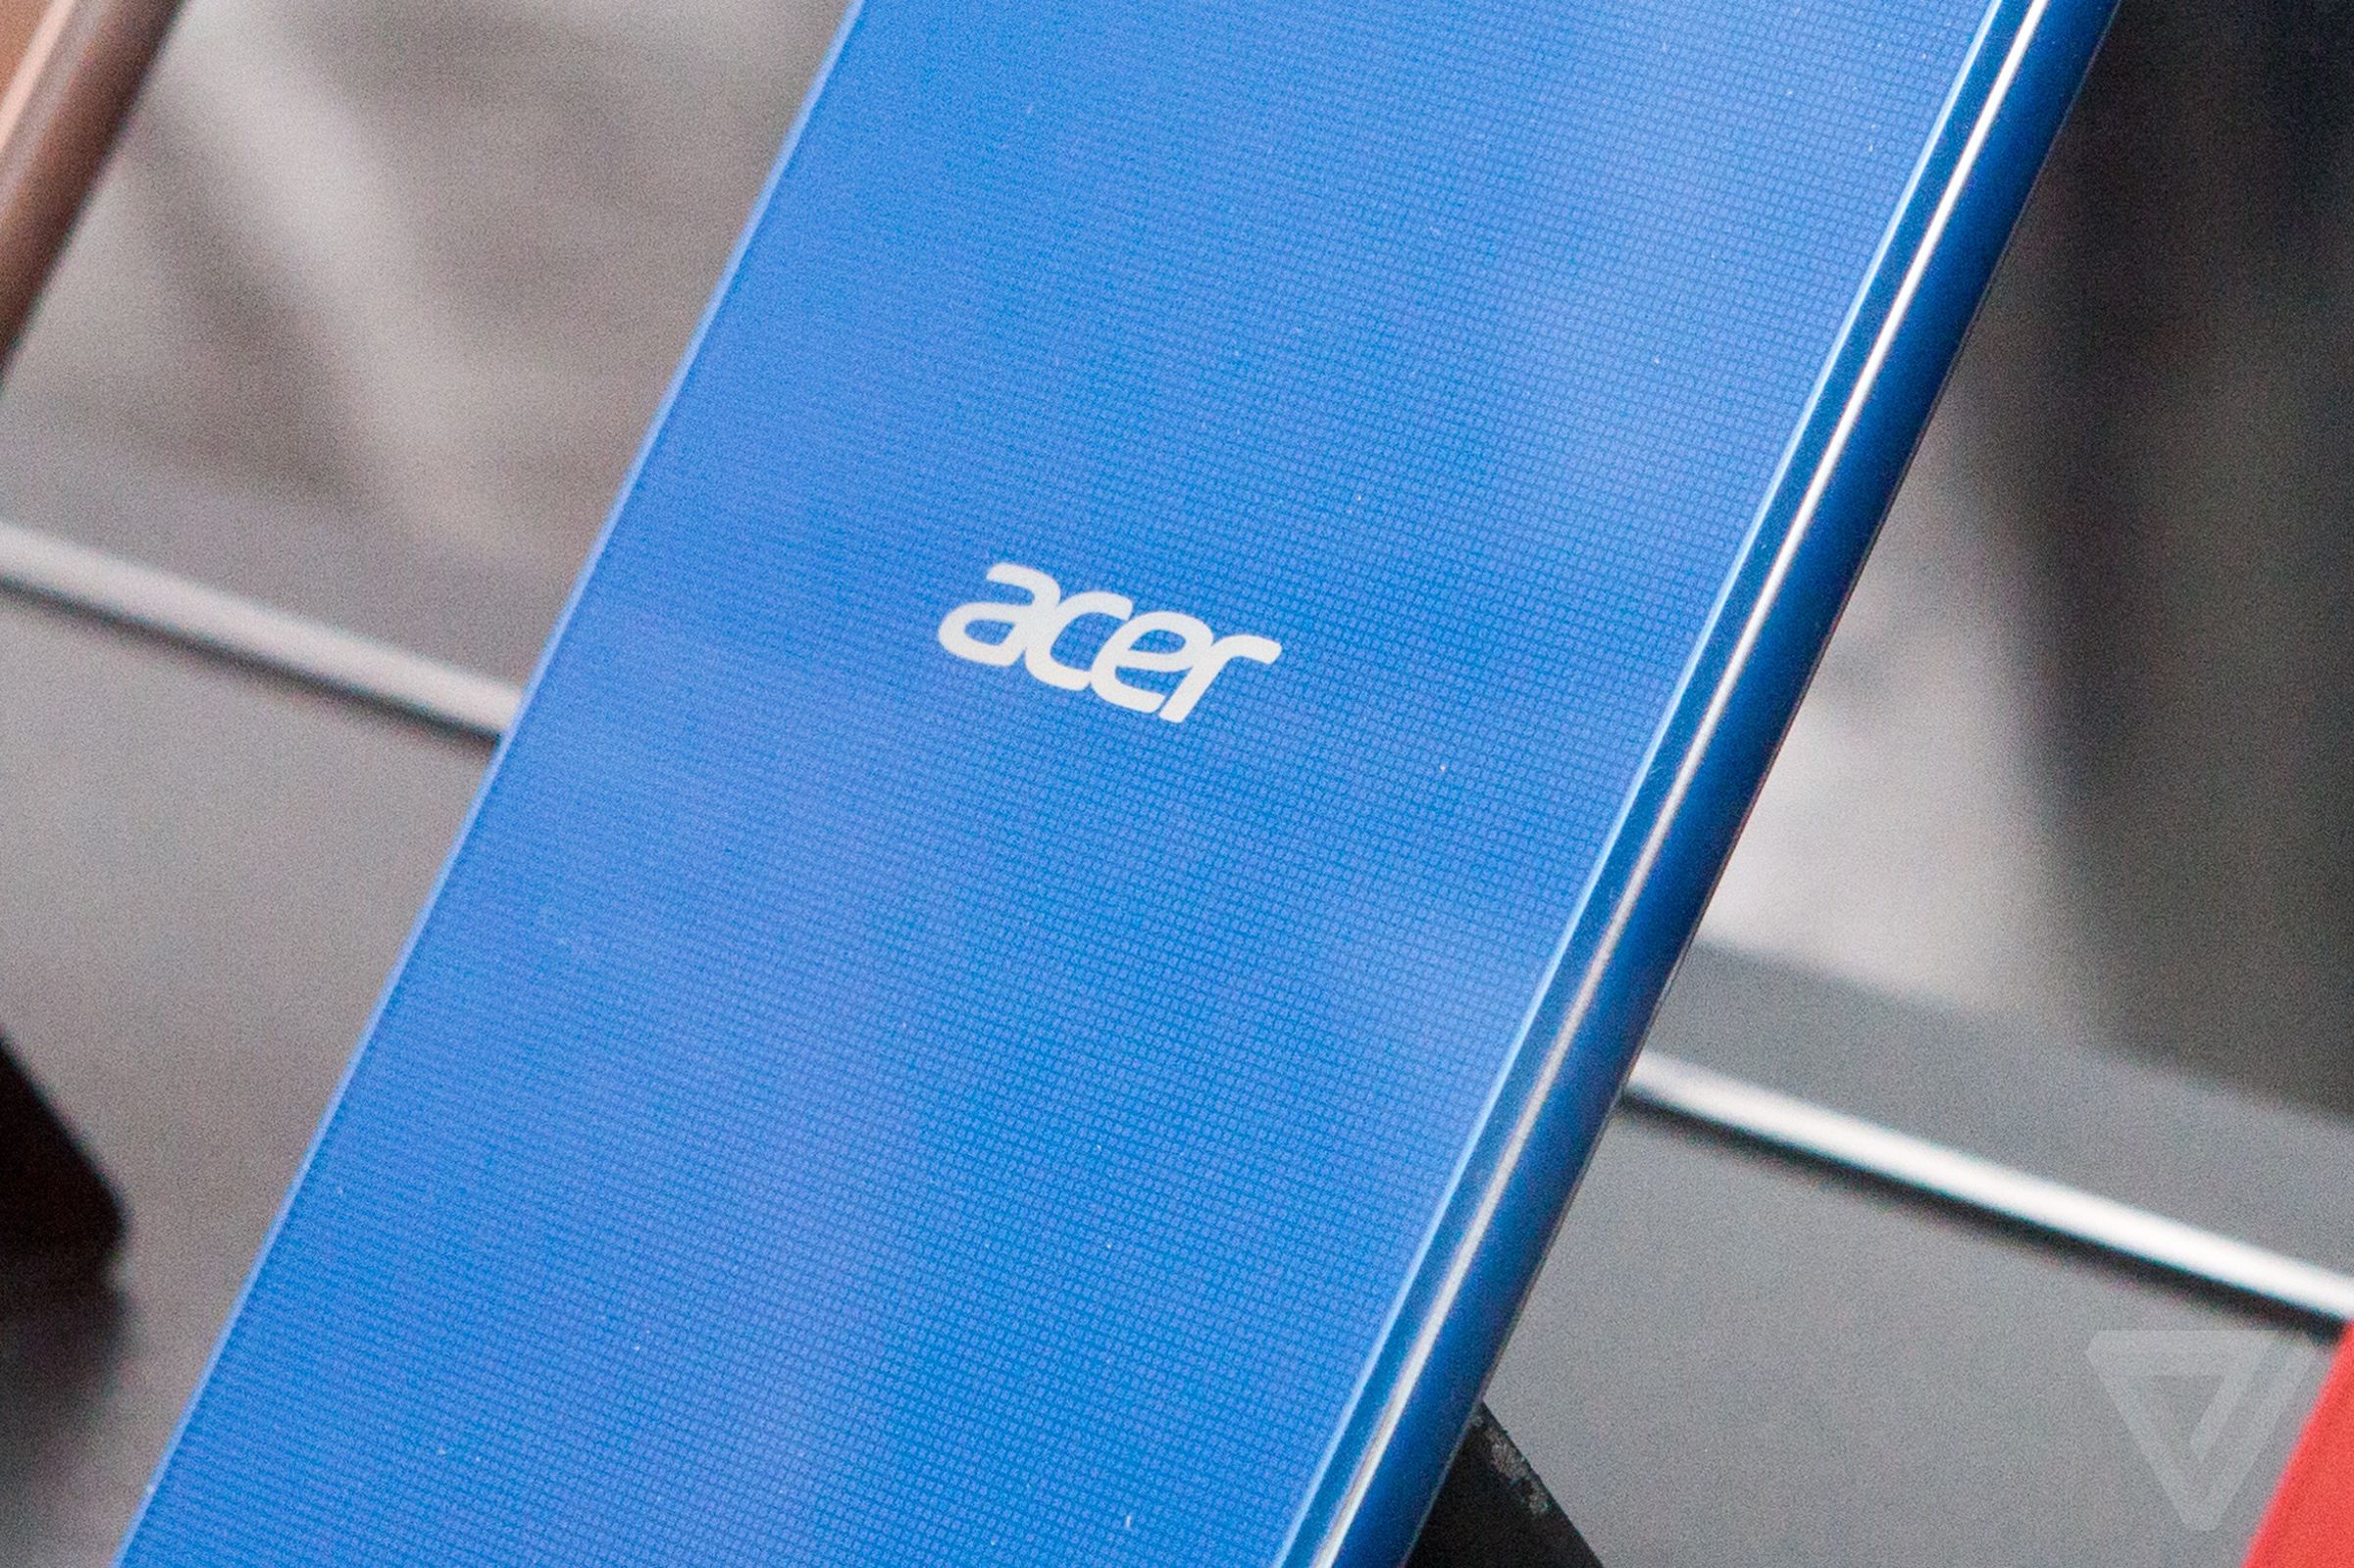 Acer Liquid X2 hands-on photos